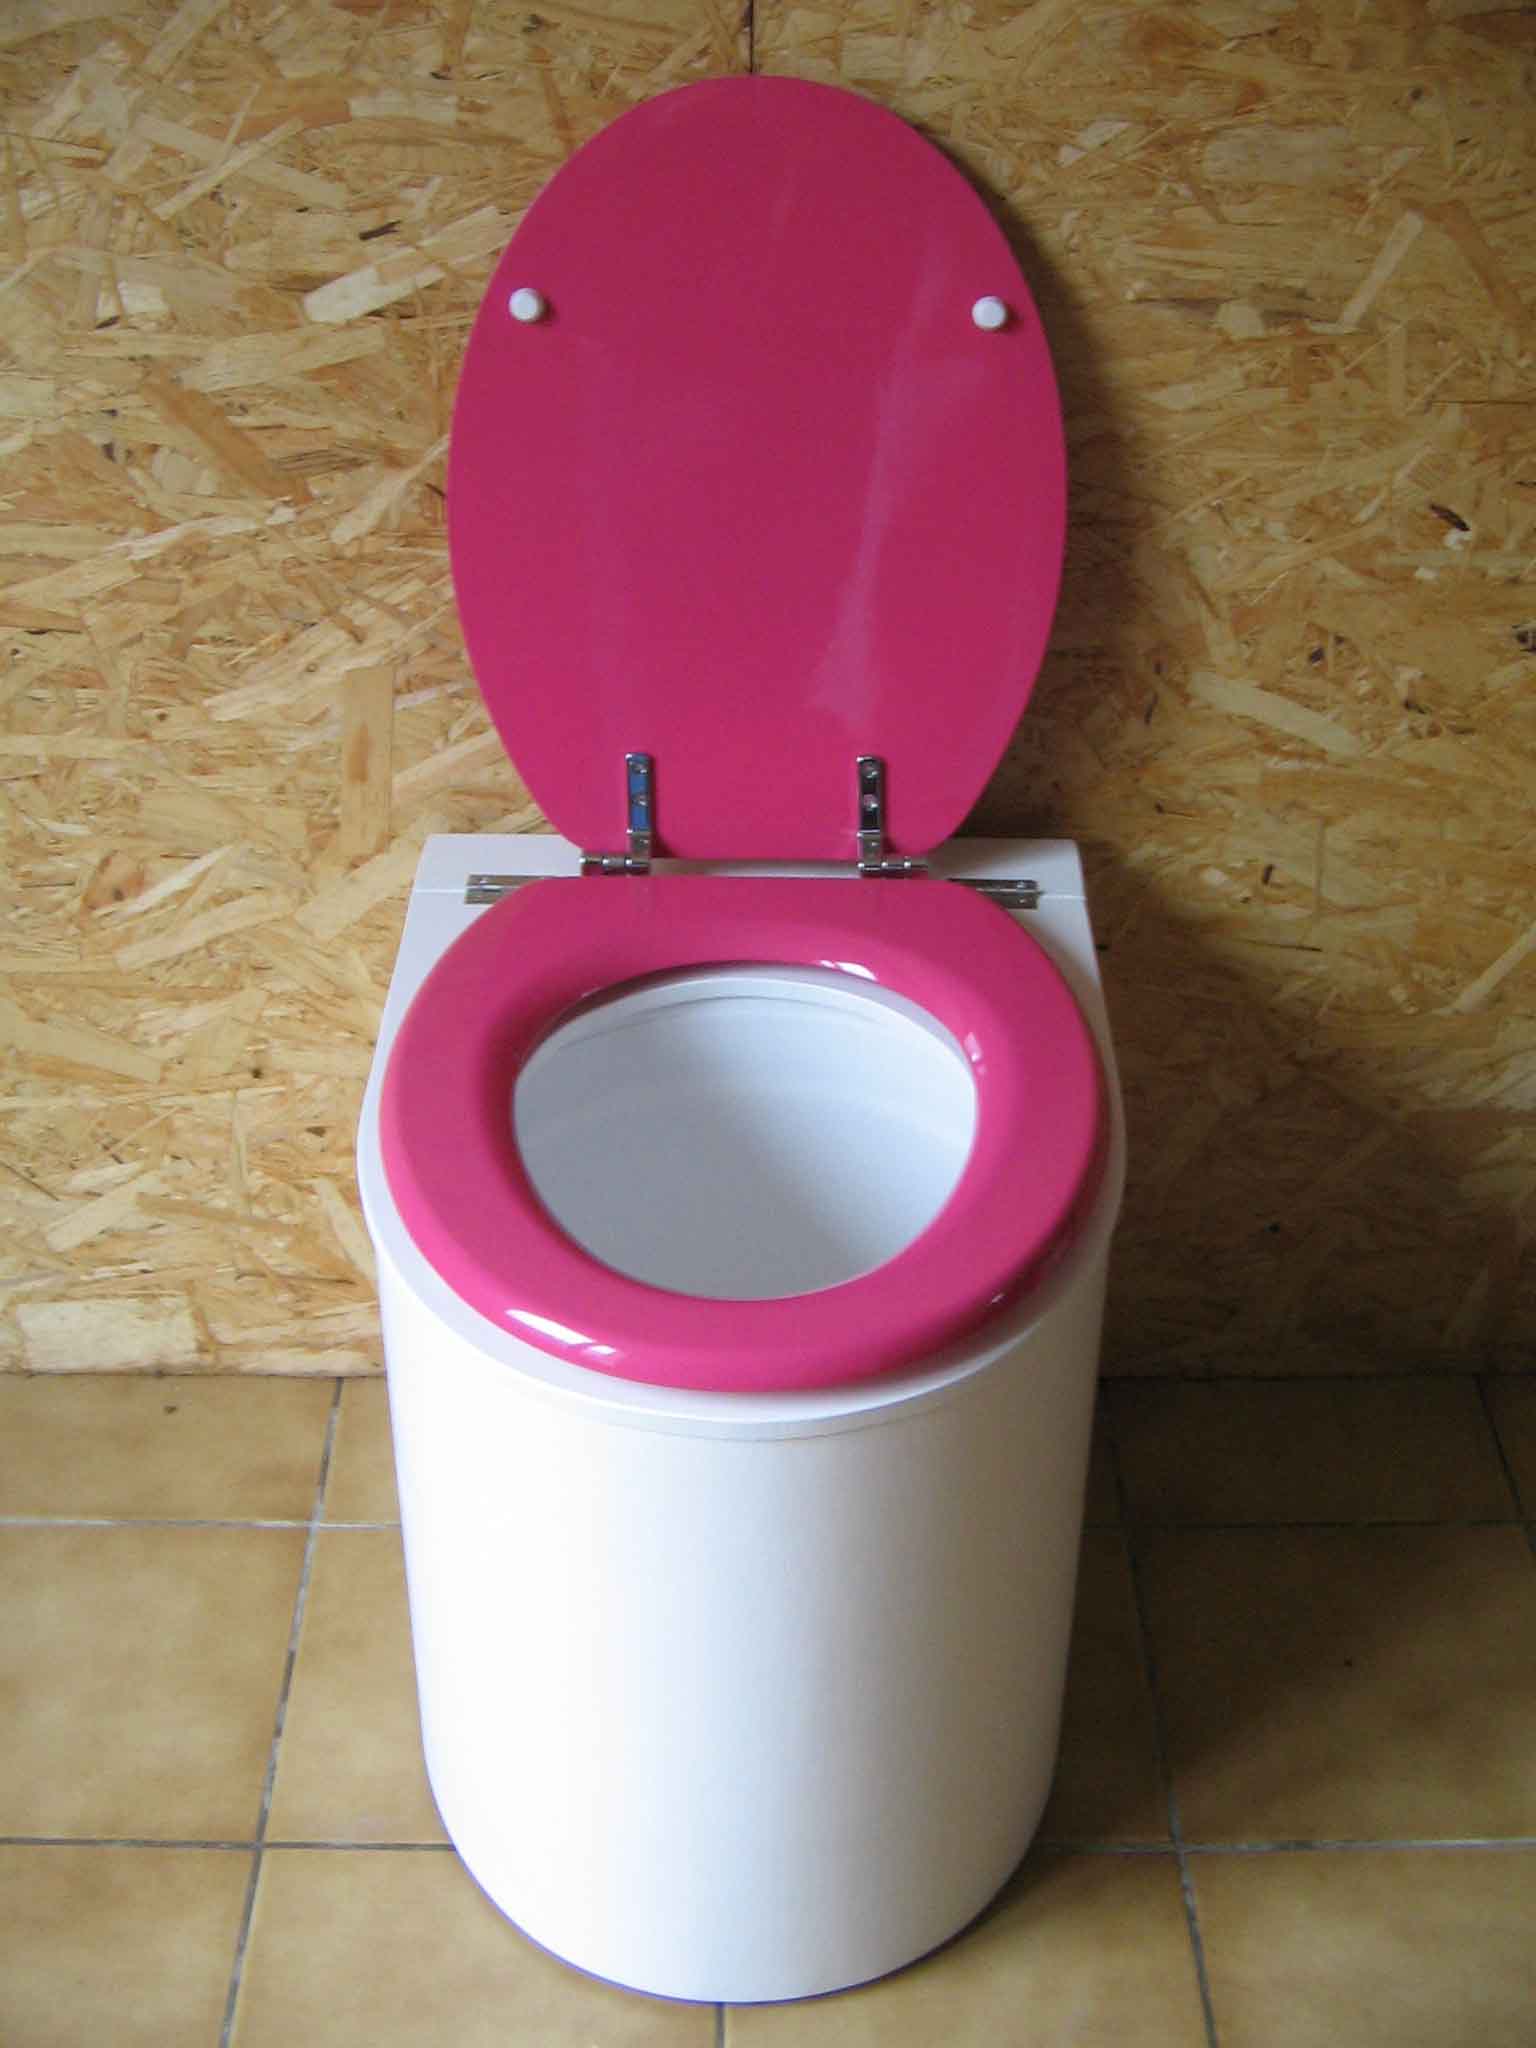 Toilette sèche moderne blanche et rose